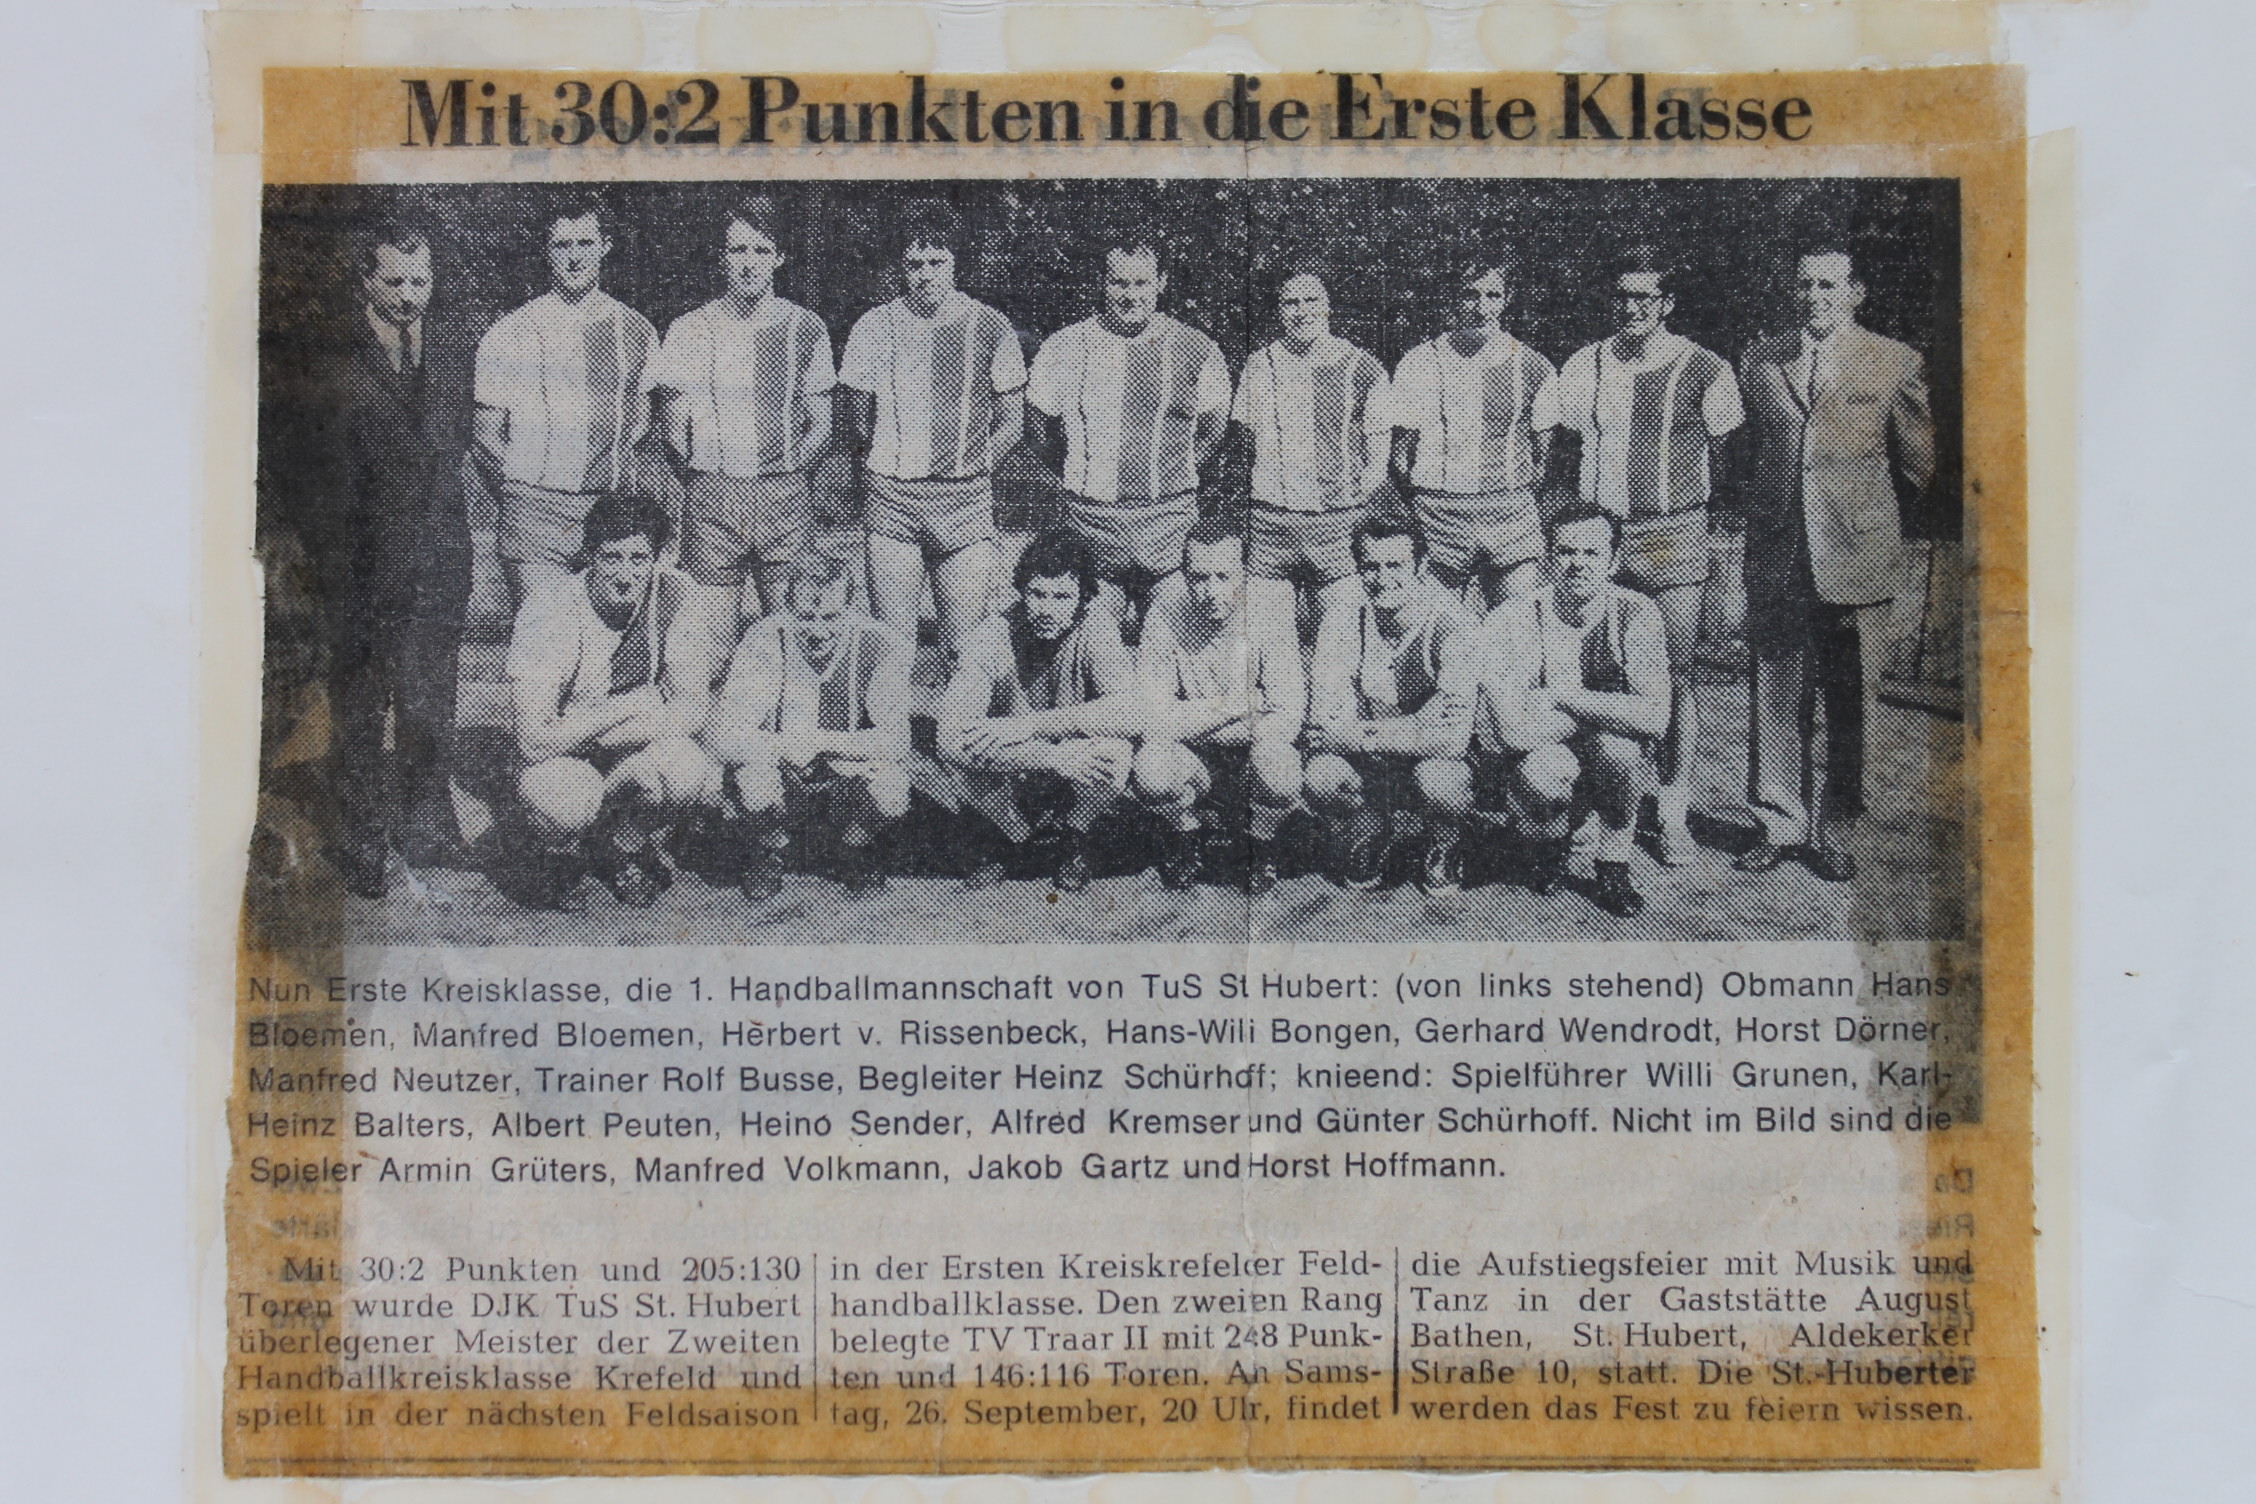 Meister und Aufstieg 1972 – TuS St. Hubert Handball